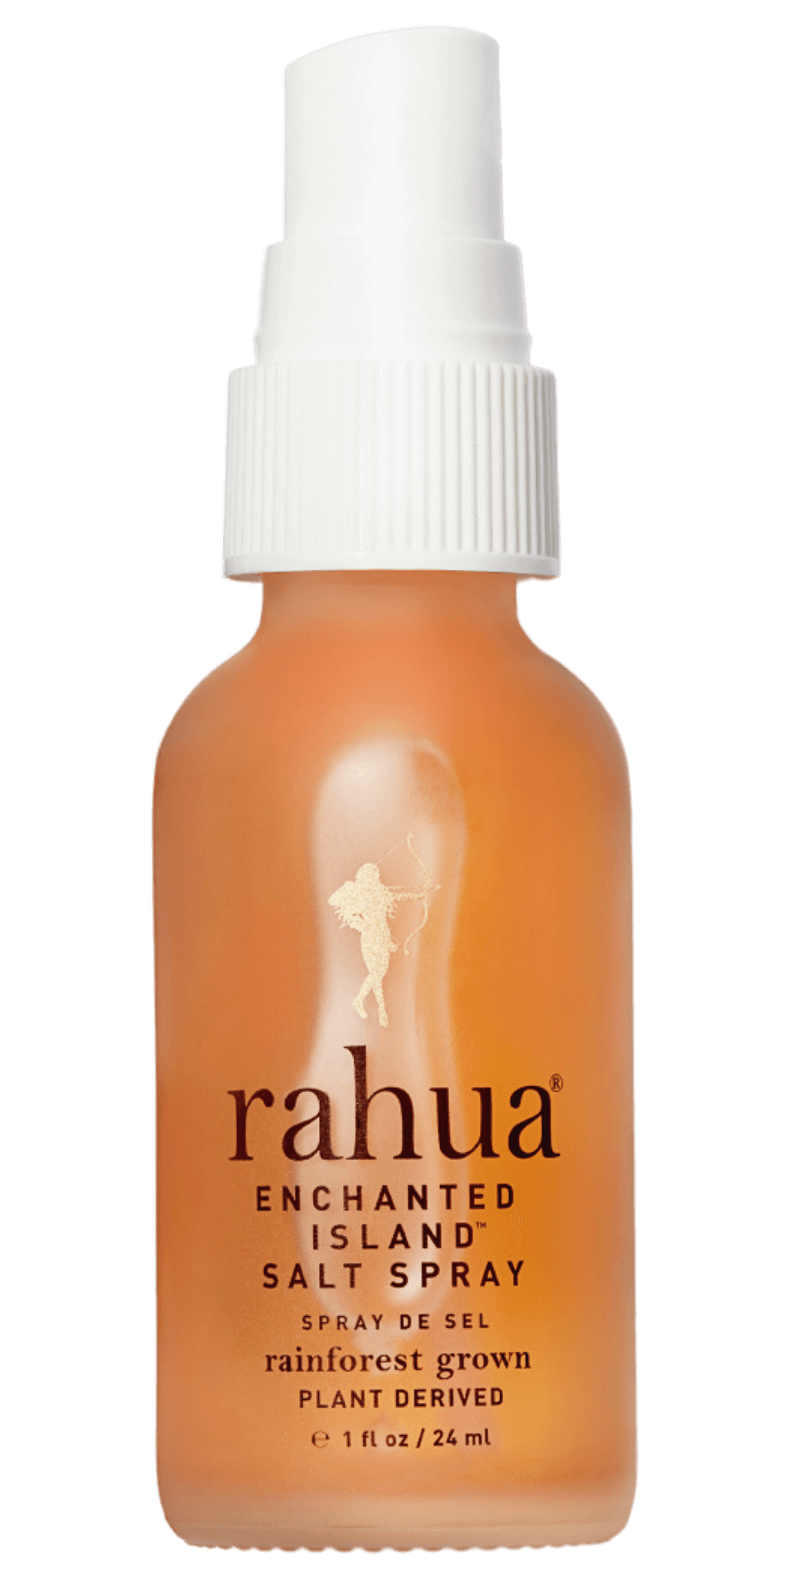 's Rahua Enchanted Island Salt Spray - Bellini's Skin and Parfumerie 